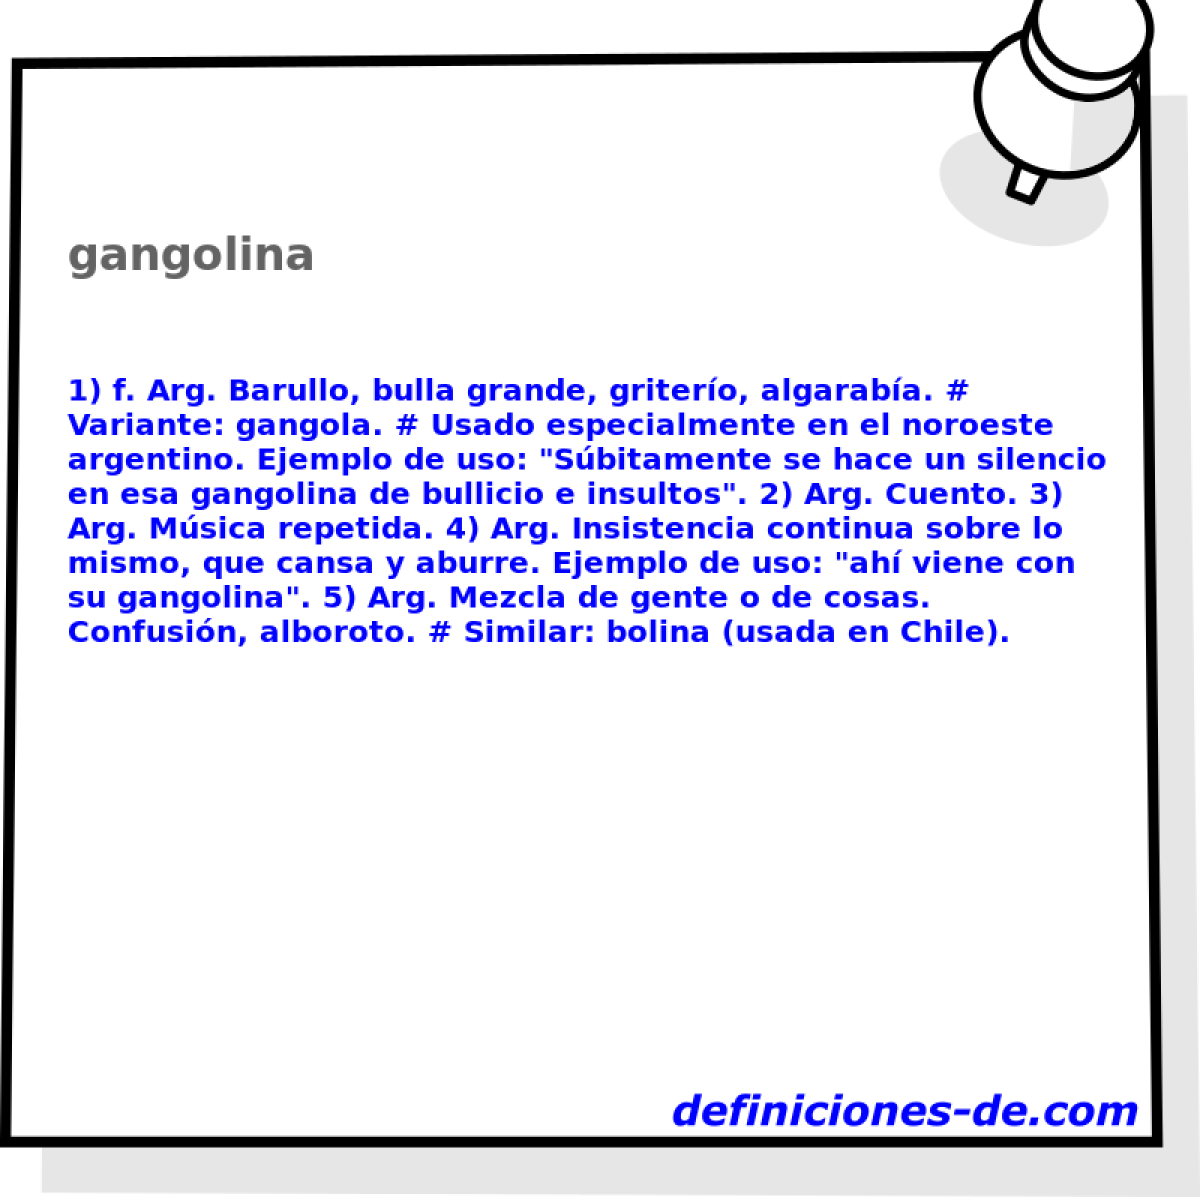 gangolina 